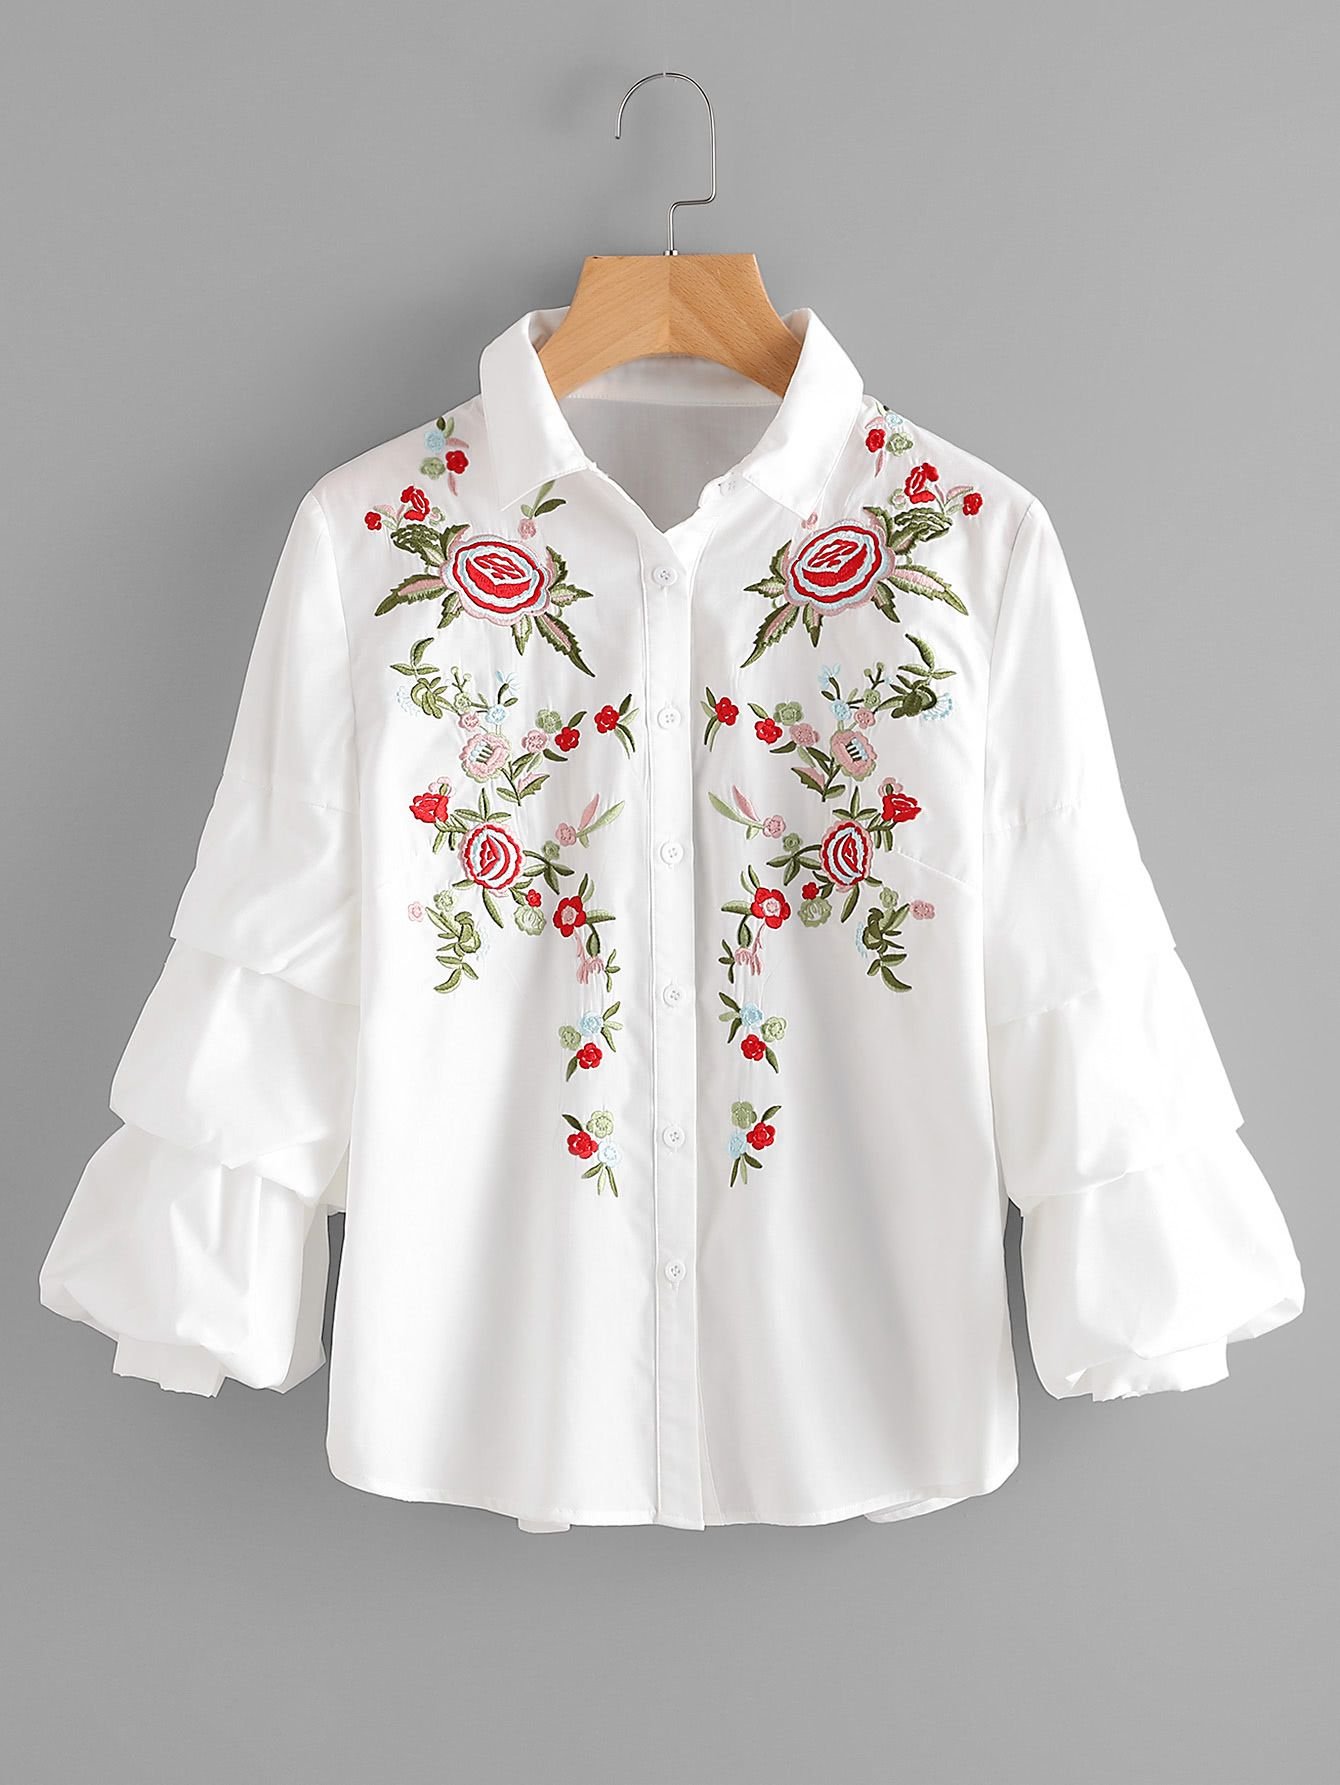 Блузка расшитая. Блузка с вышивкой. Вышивка на рубашке. Женские блузки с вышивкой. Белая блузка с вышивкой.